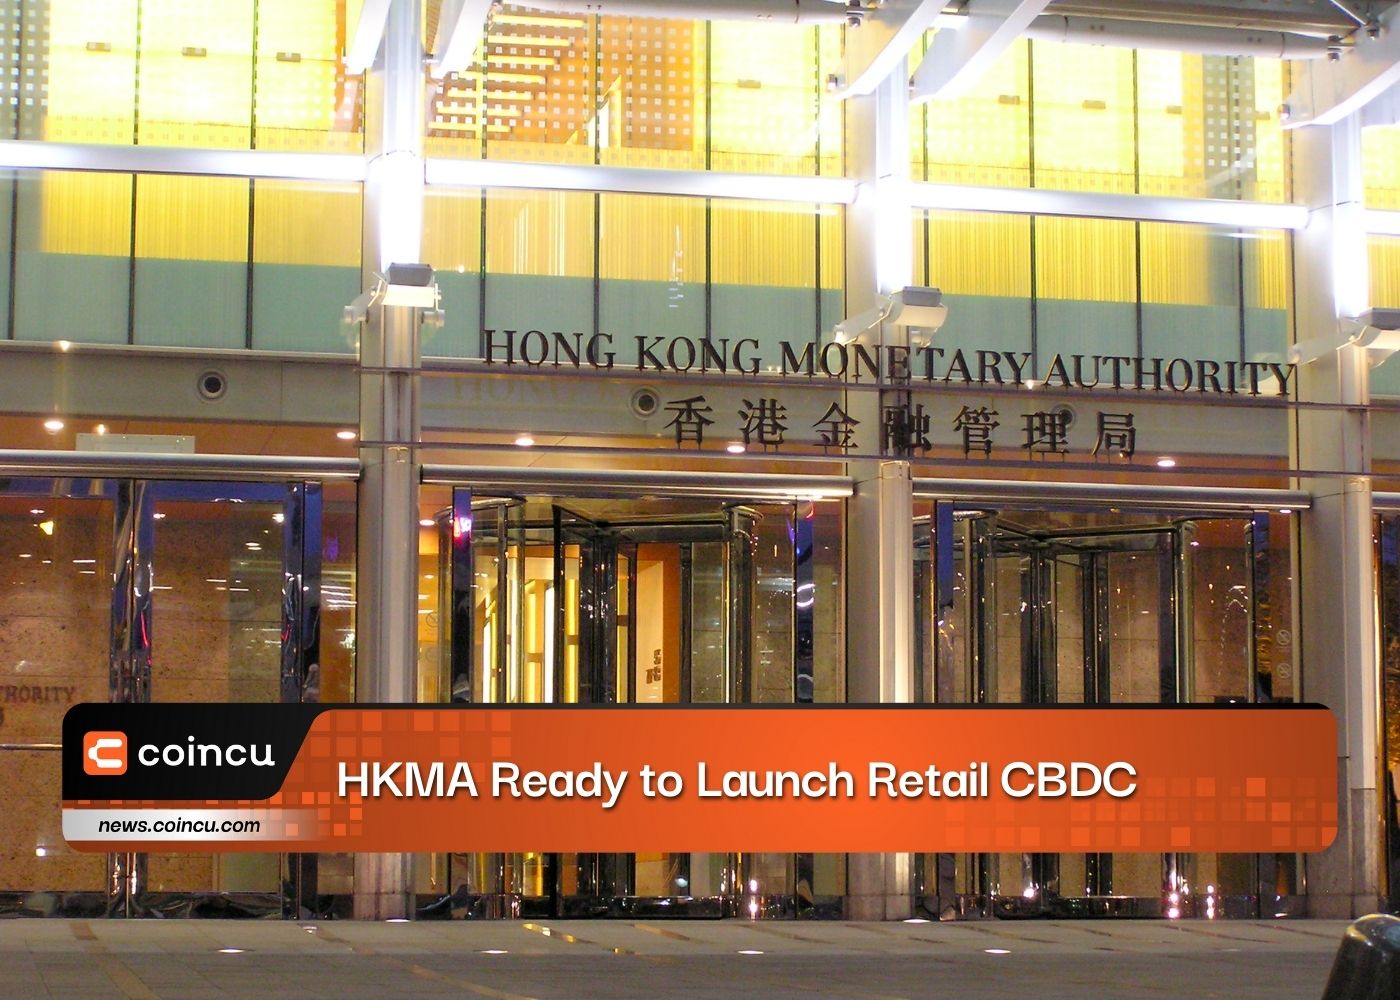 HKMA, 소매 CBDC 출시 준비 완료